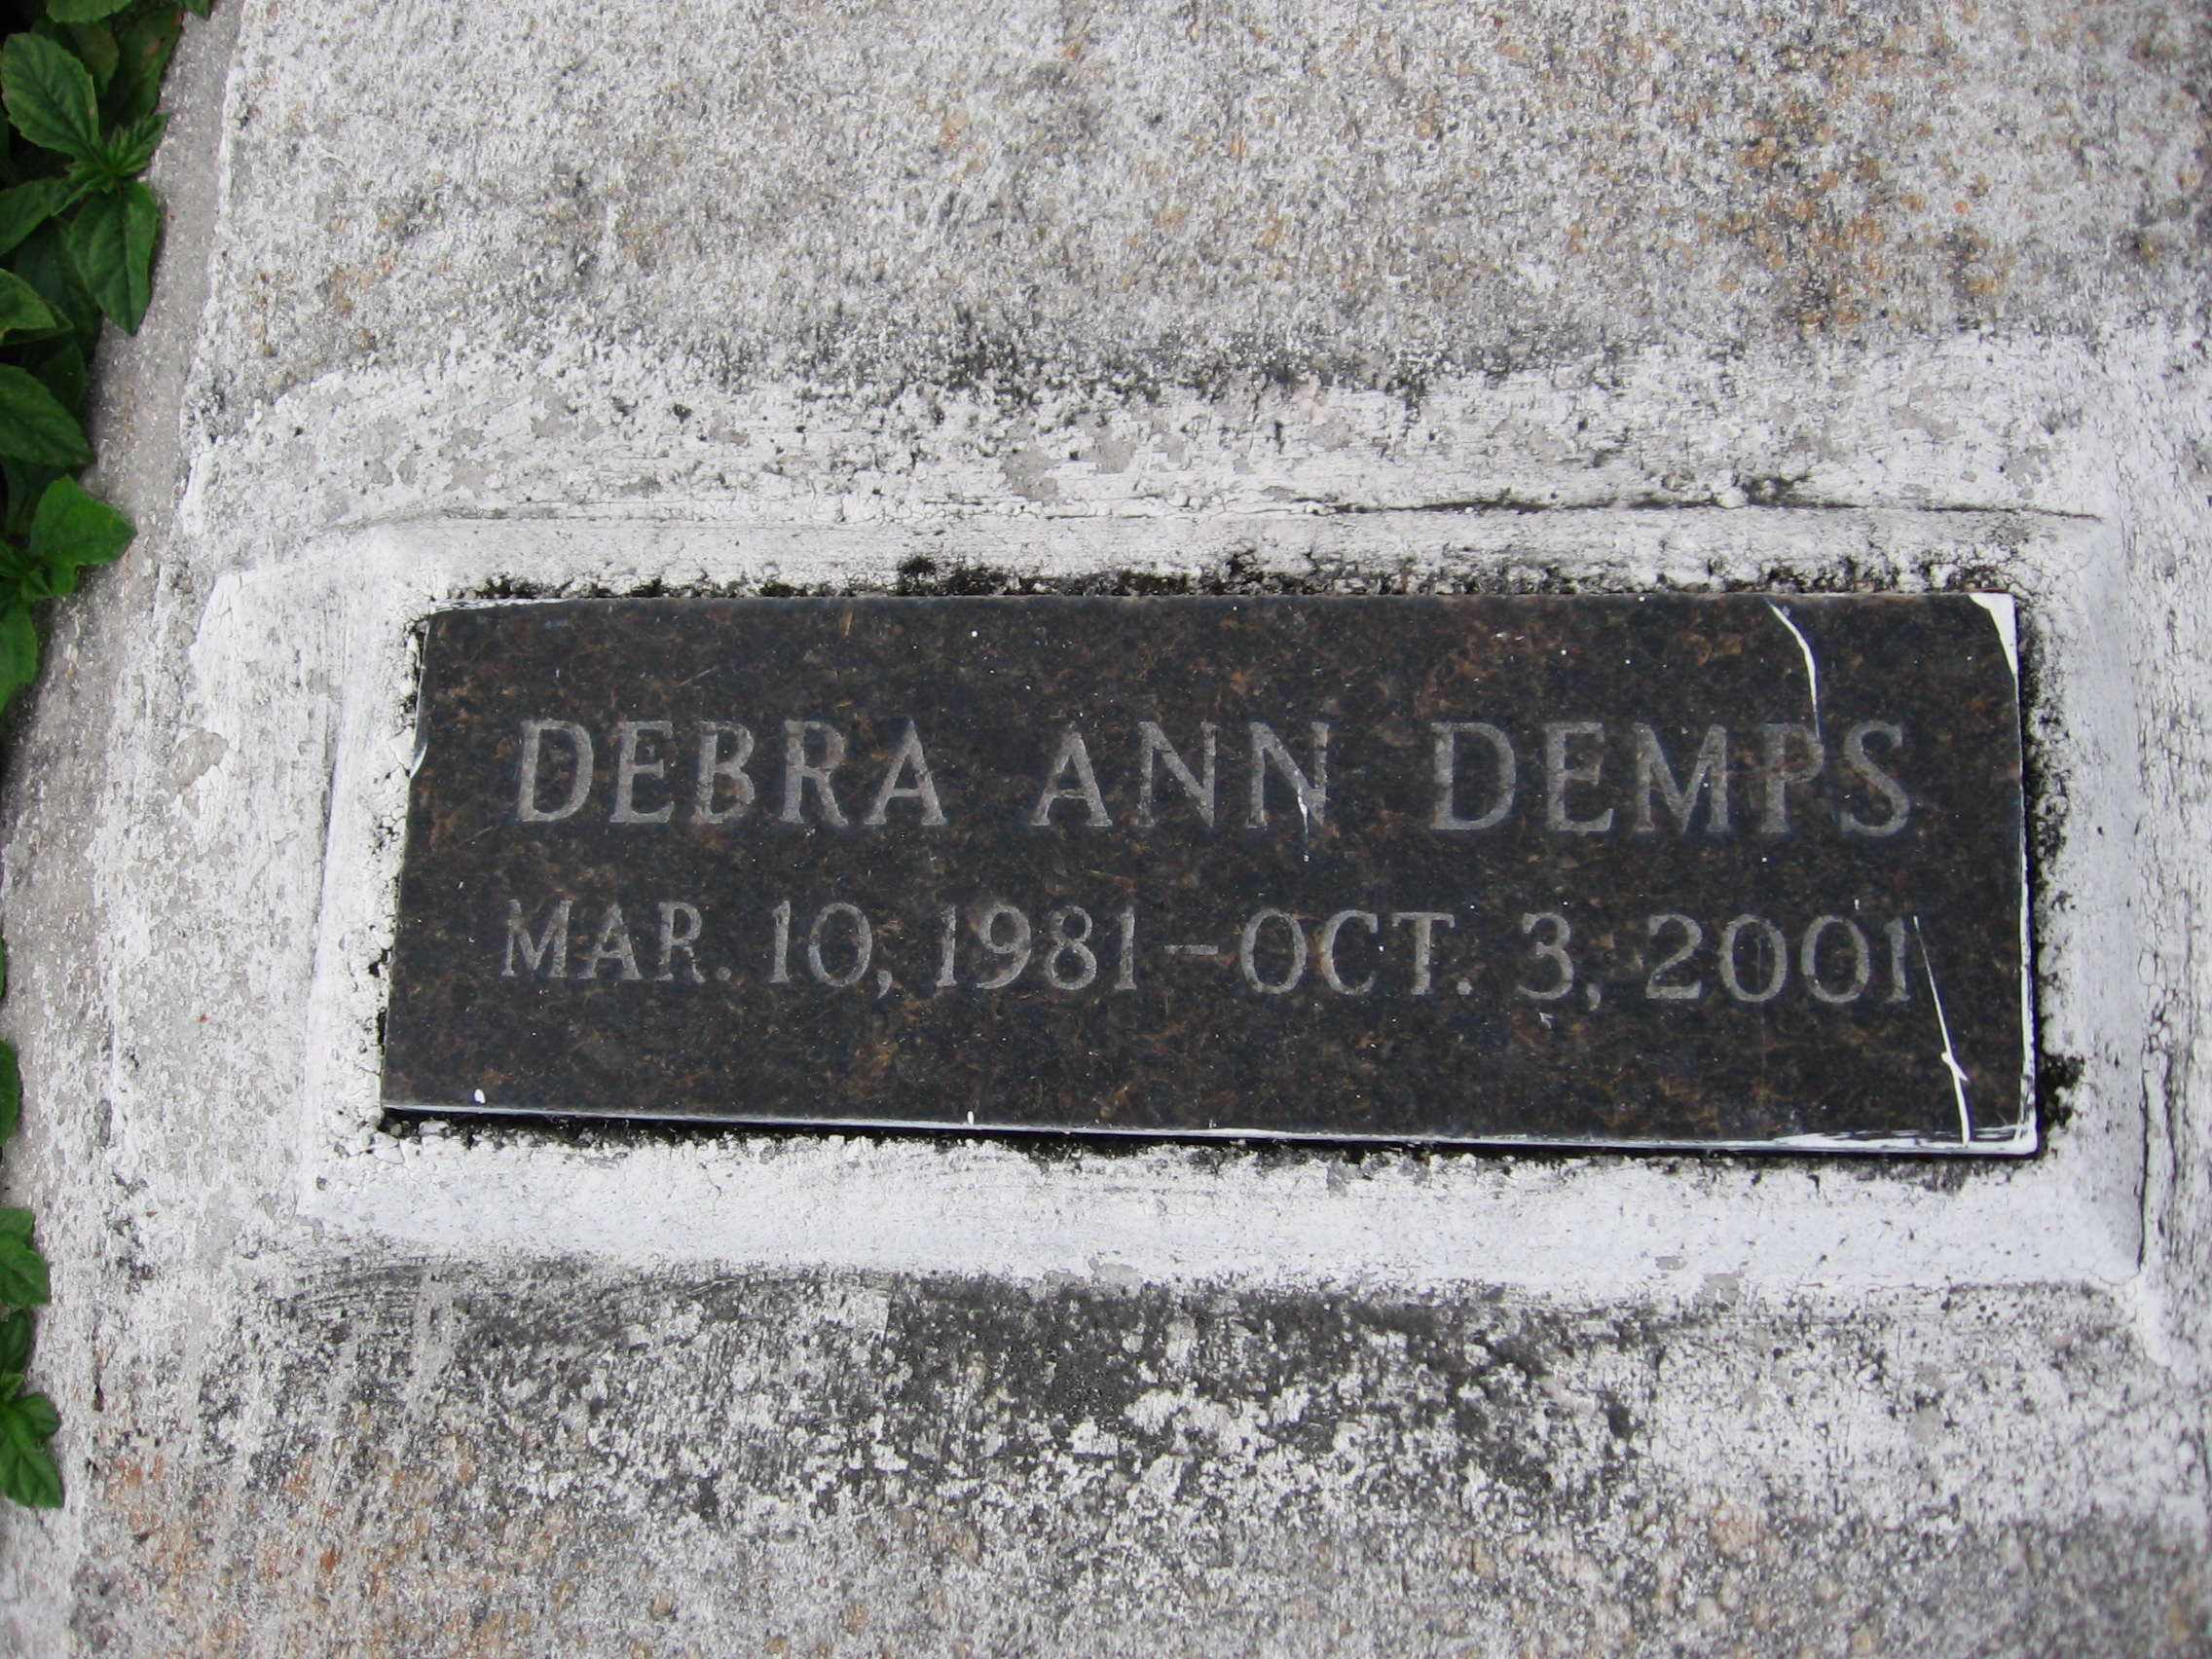 Debra Ann Demps